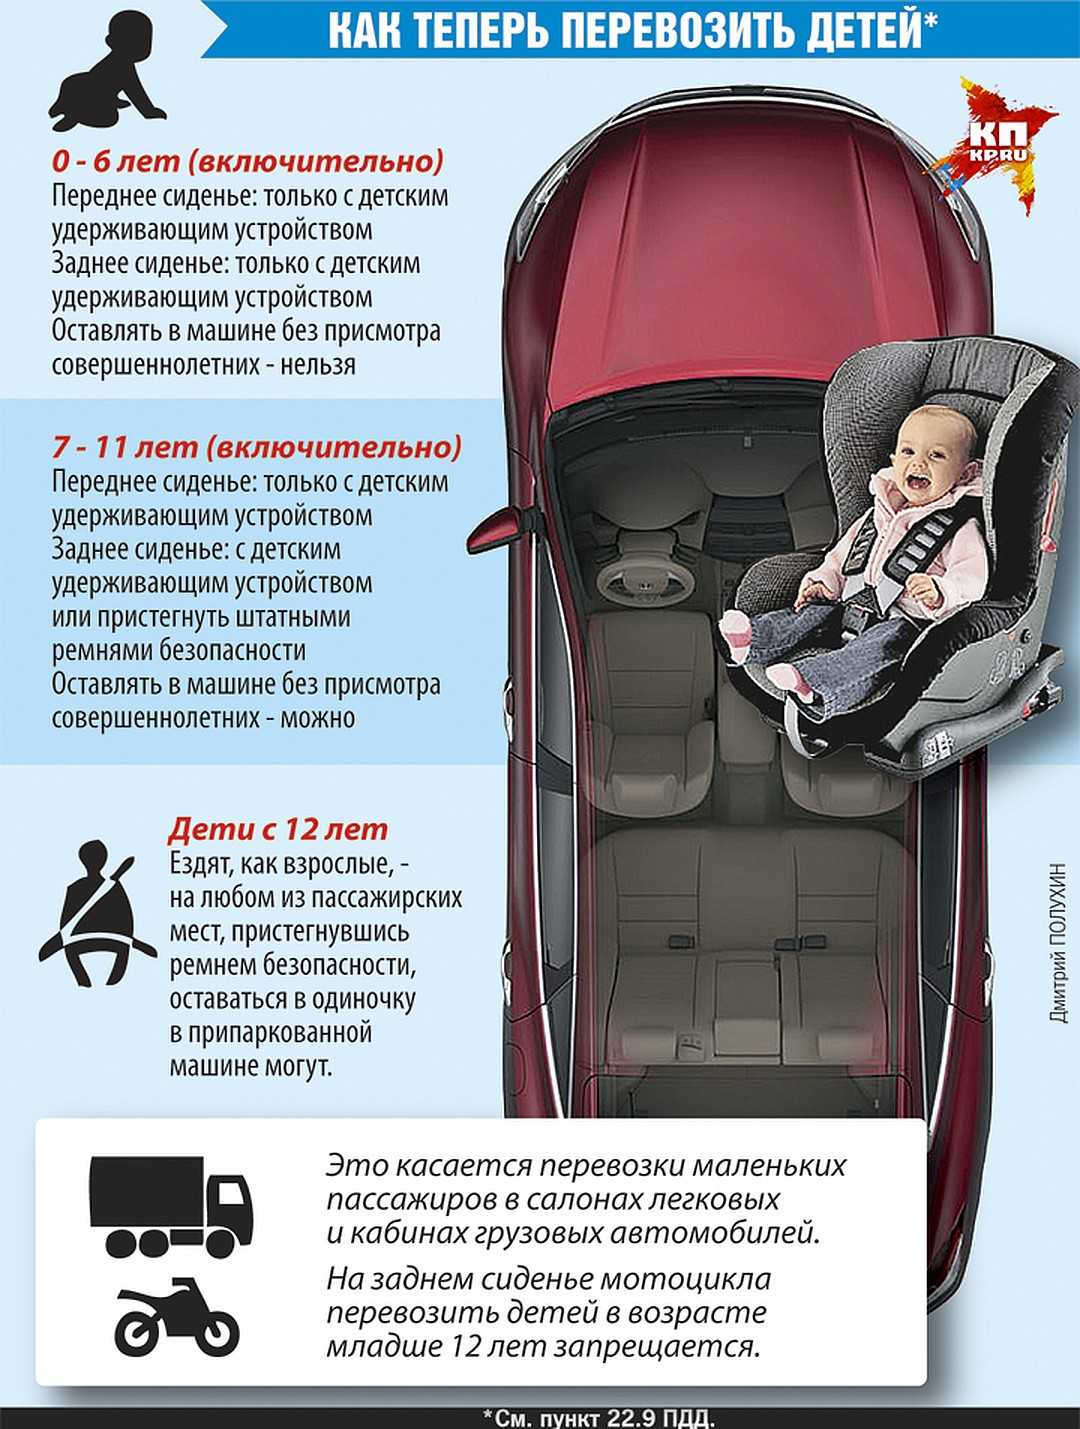 Перевозки детей в автомобильных креслах